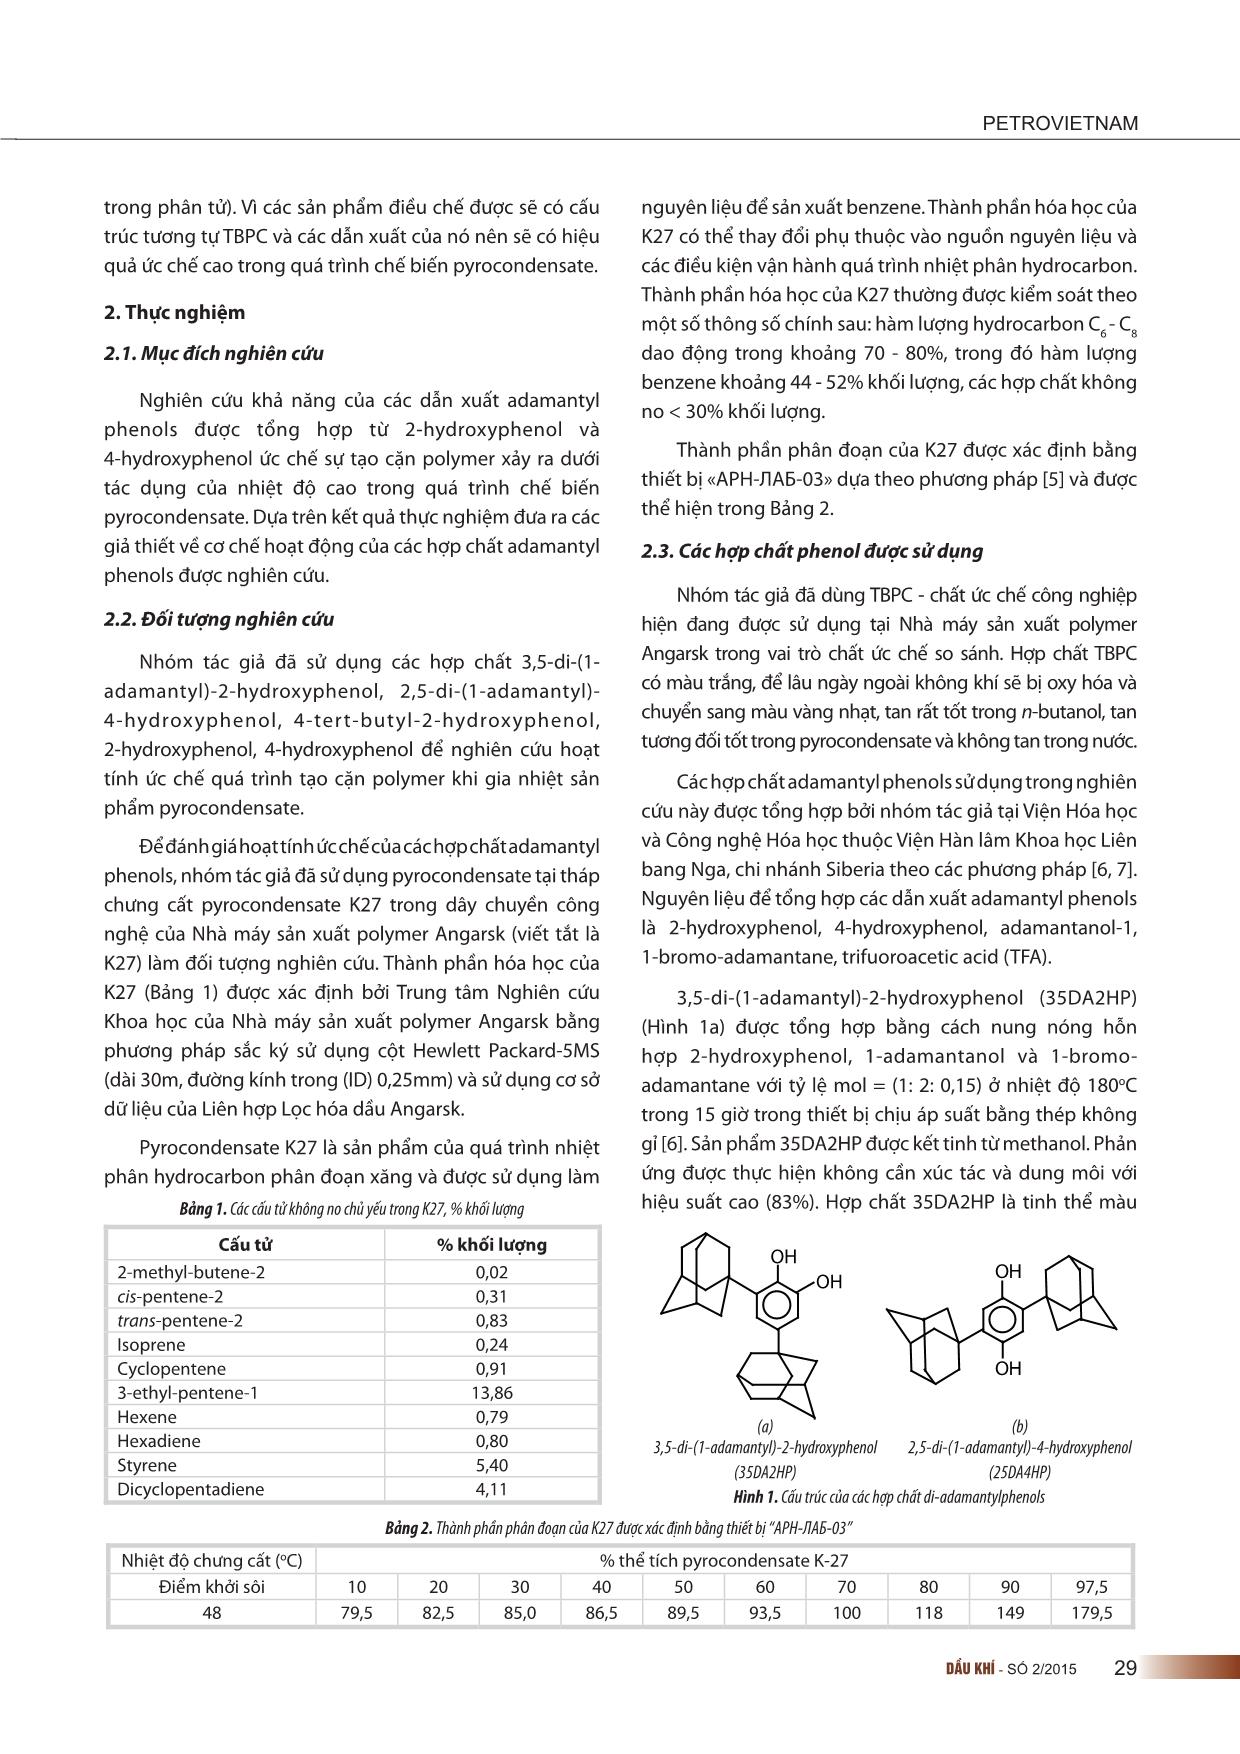 Ức chế quá trình tạo cặn polymer trong chế biến sản phẩm lỏng của quá trình nhiệt phân hydrocarbon bằng các dẫn xuất di-Adamantyl di-hydroxybenzene trang 2